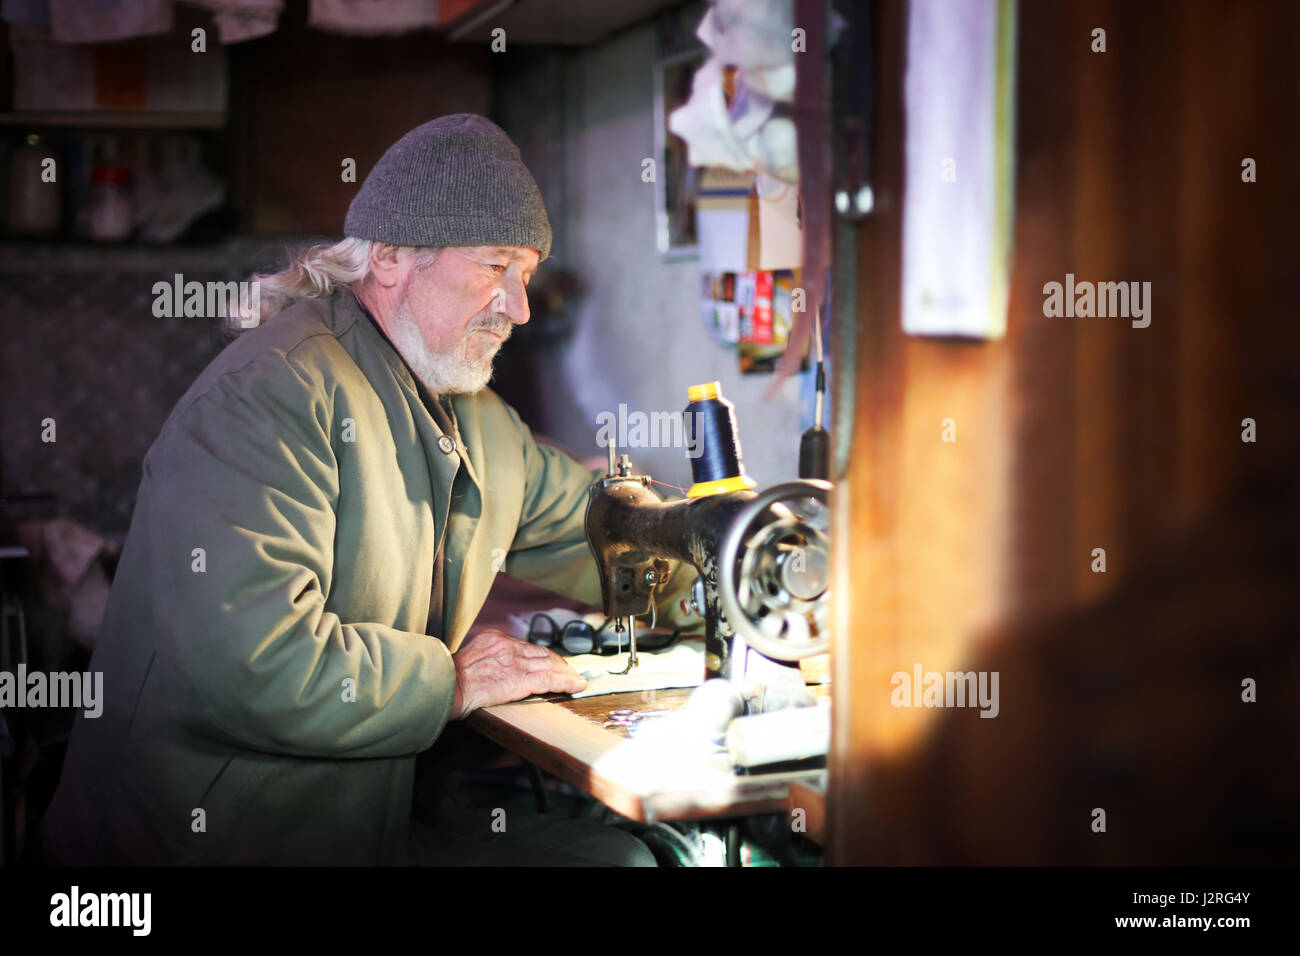 Un hombre adulto senior coser un pedazo de tela de una máquina de coser. Foto de stock